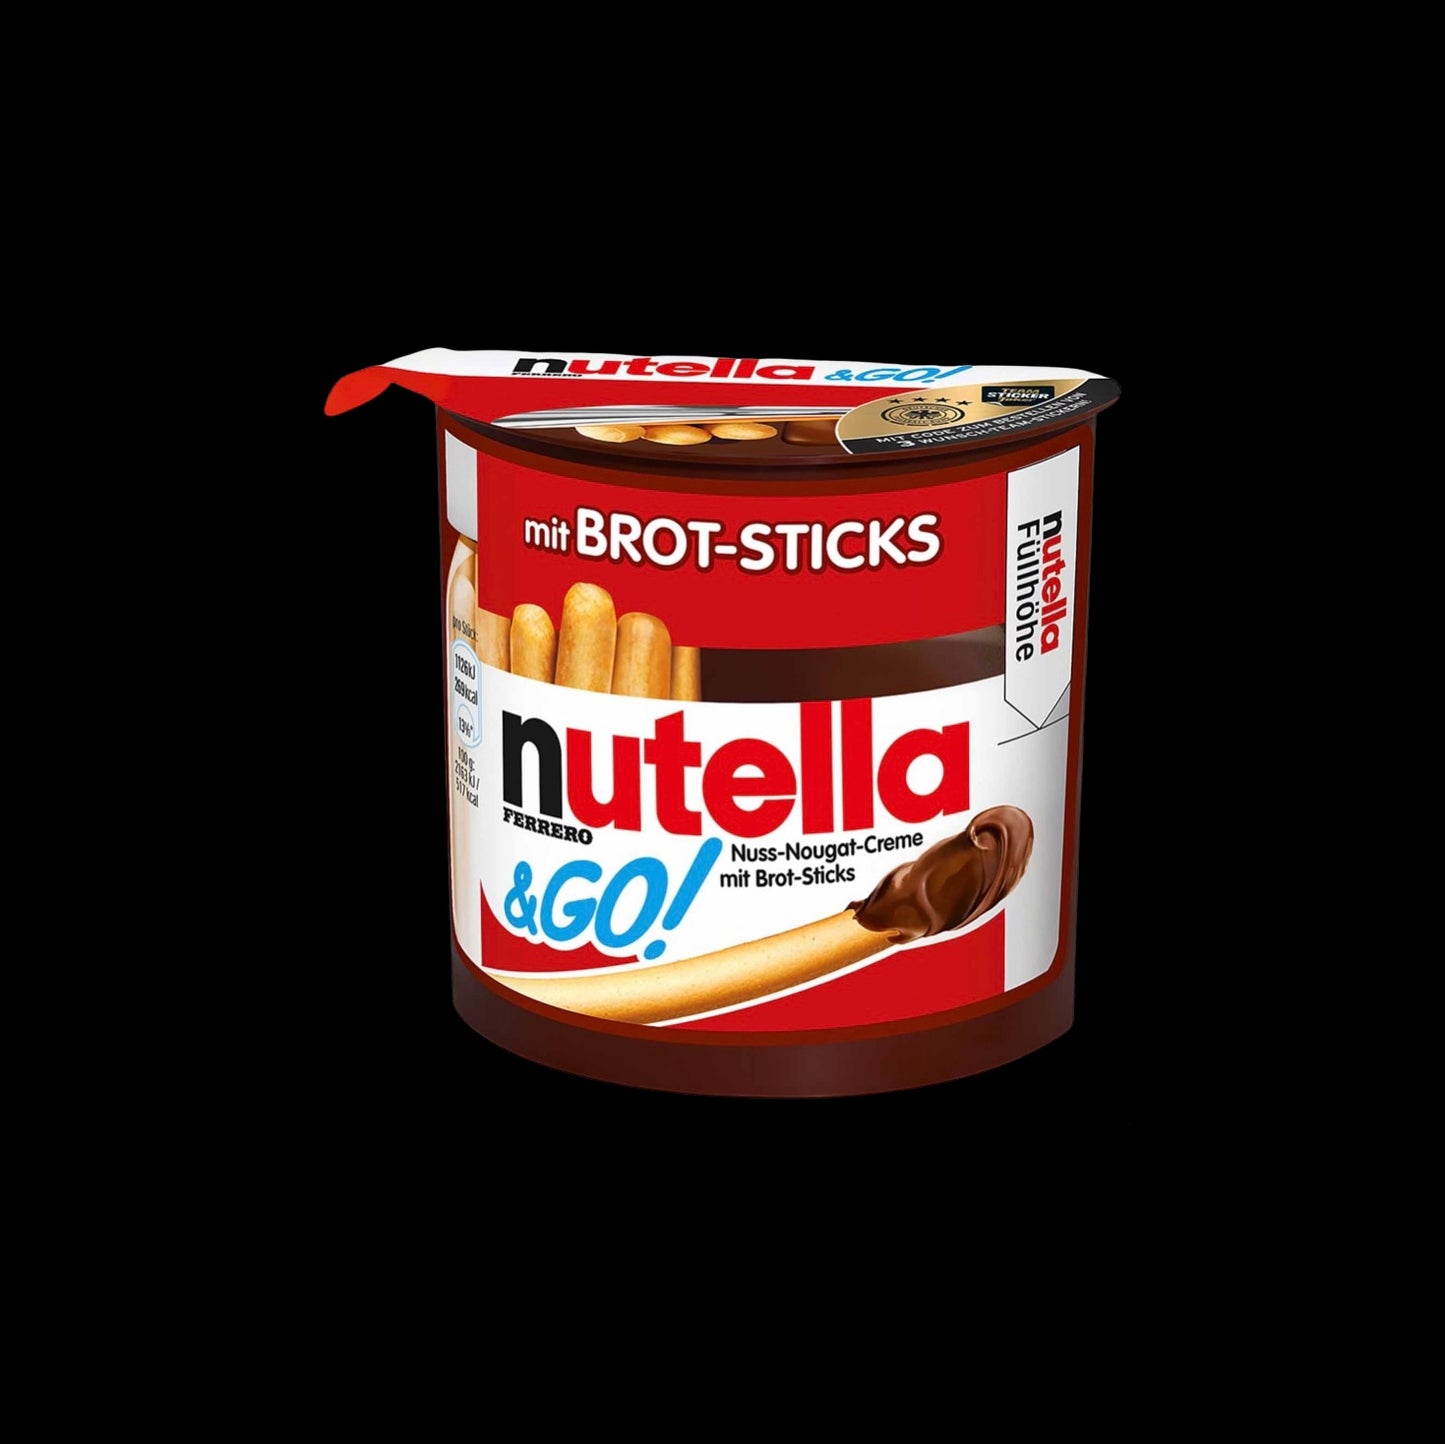 Nutella & GO! Brot-Sticks 52g